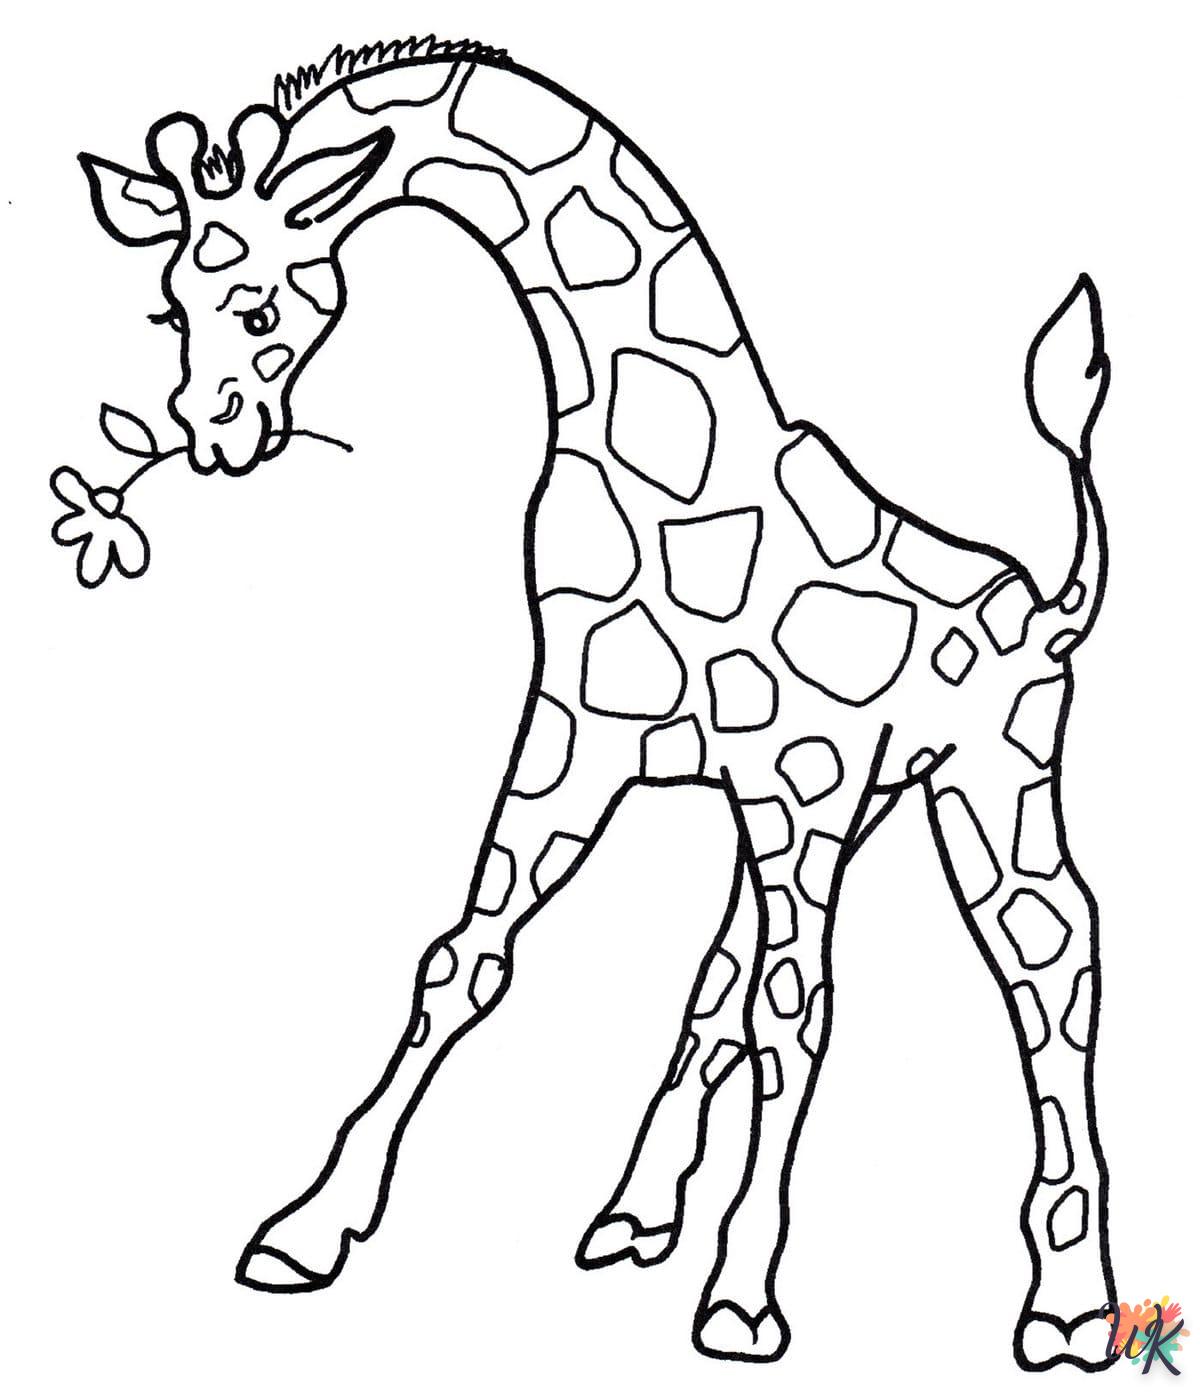 Giraffe kleurplaten7